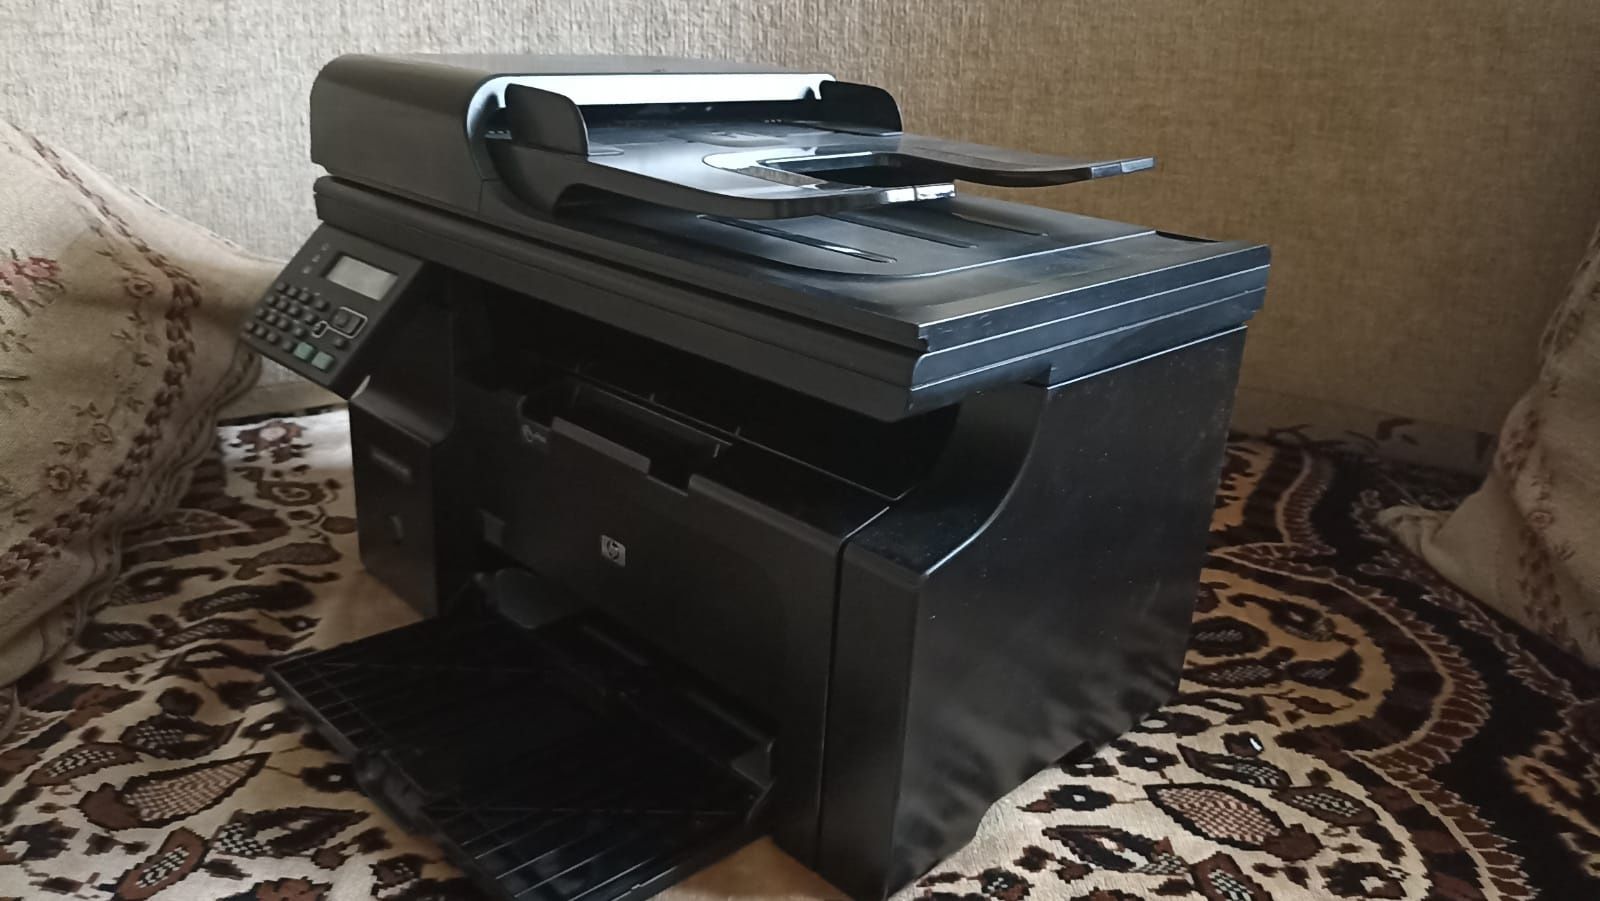 Продается принтер МФУ, 3 в 1 (печатает,копирует,сканирует) hp lj 1212.